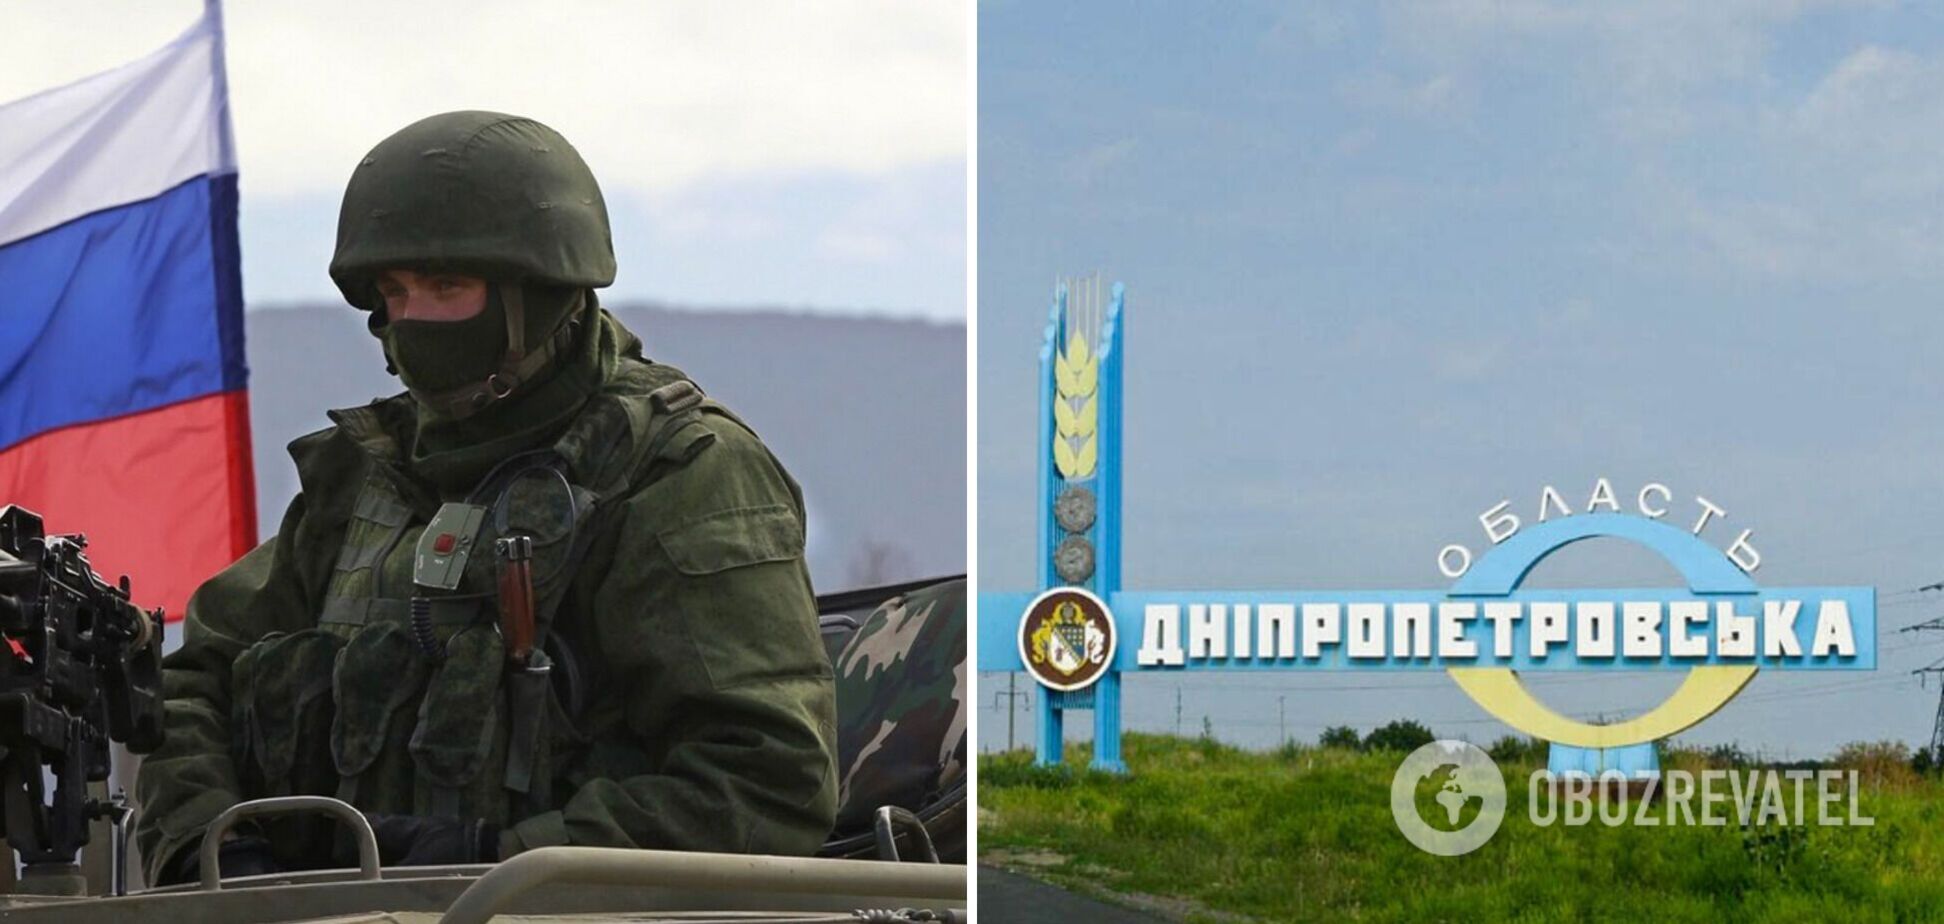 Оккупанты начали применять новый вид террора украинцев, сжигая поля с зерном